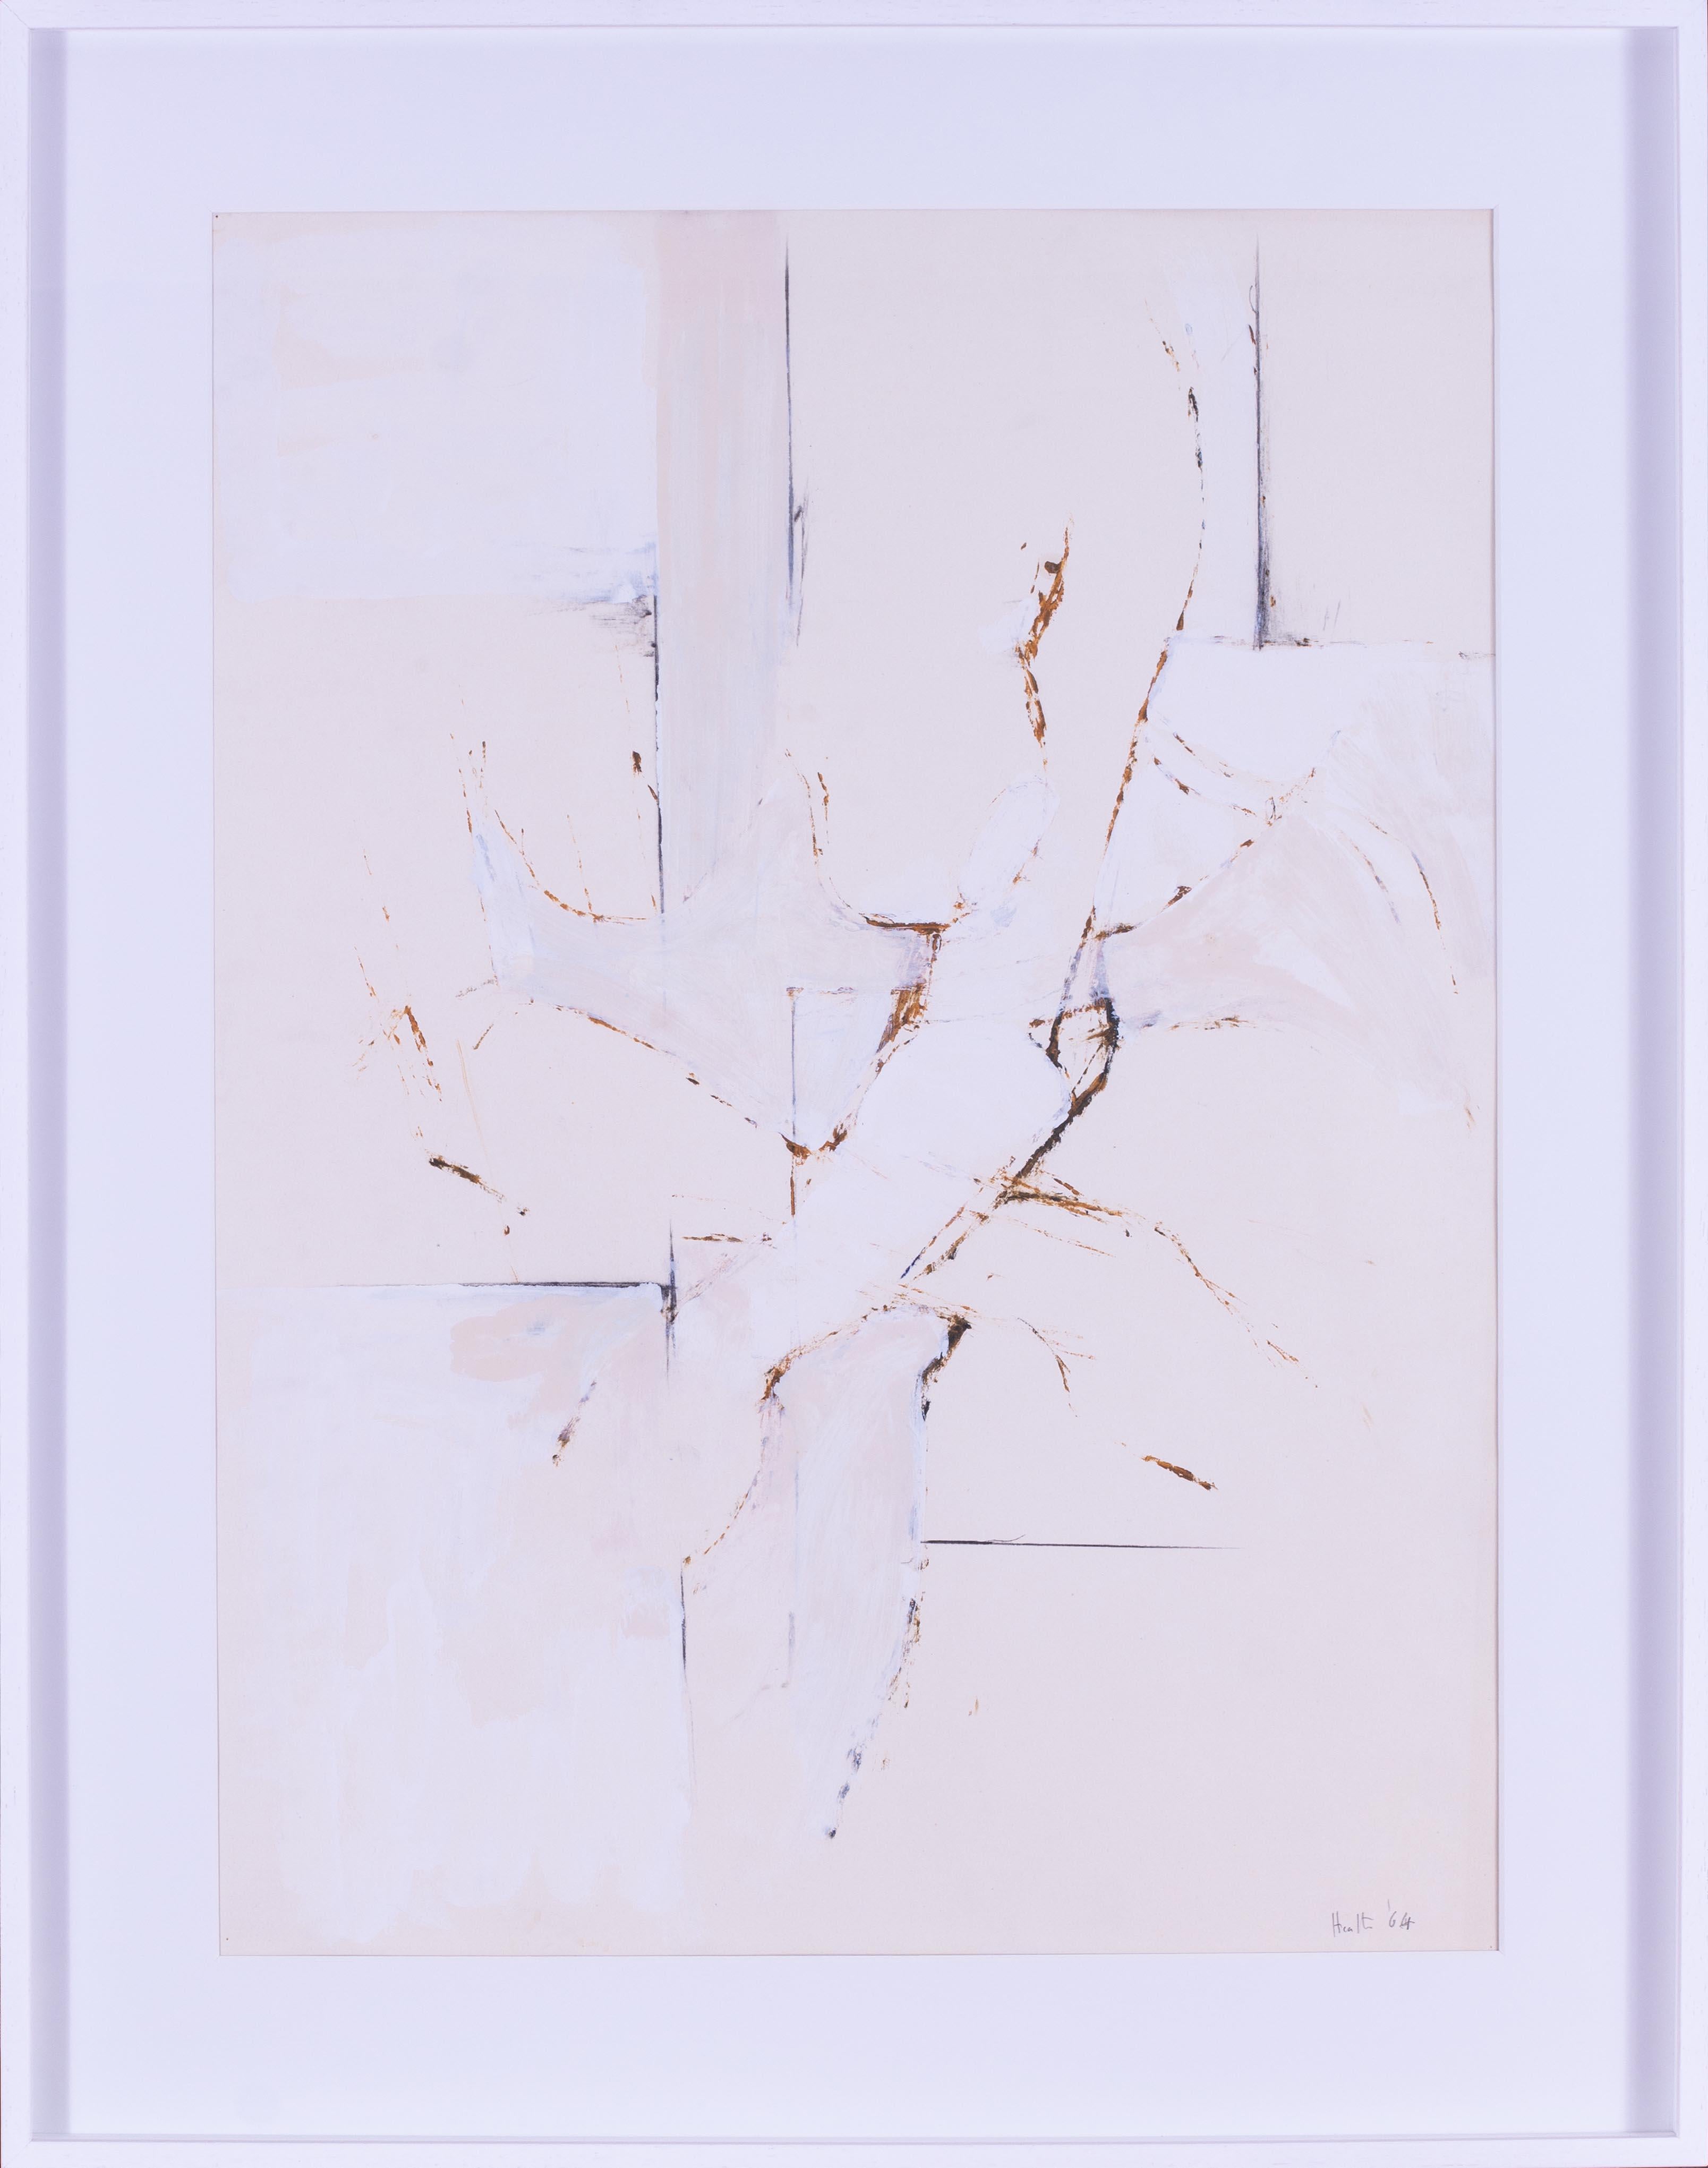 Britisches Gouache-Gemälde von Adrian Heath, 1964 in Creme und Weiß